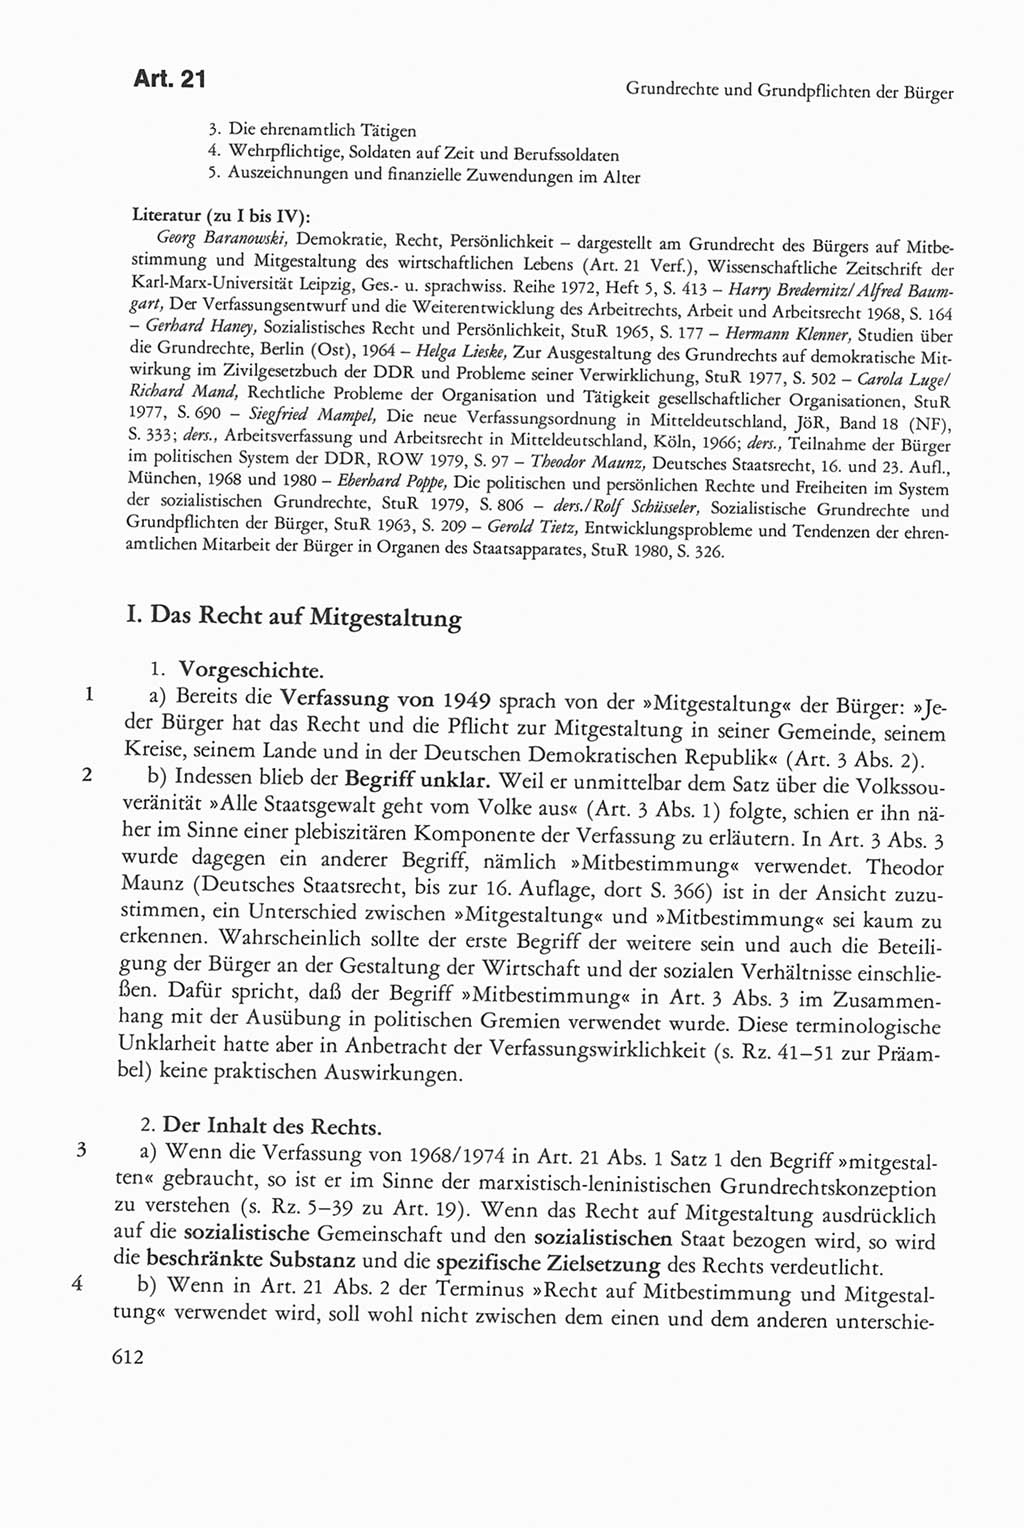 Die sozialistische Verfassung der Deutschen Demokratischen Republik (DDR), Kommentar mit einem Nachtrag 1997, Seite 612 (Soz. Verf. DDR Komm. Nachtr. 1997, S. 612)